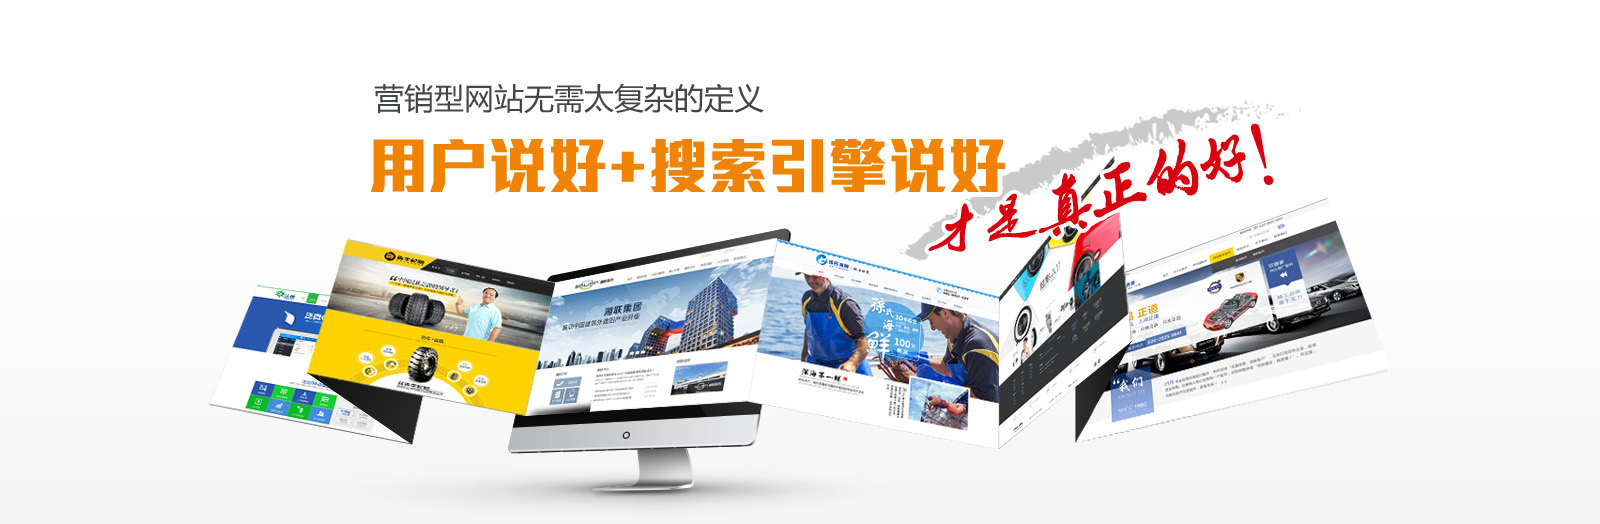 深圳做网站的公司  网站建设